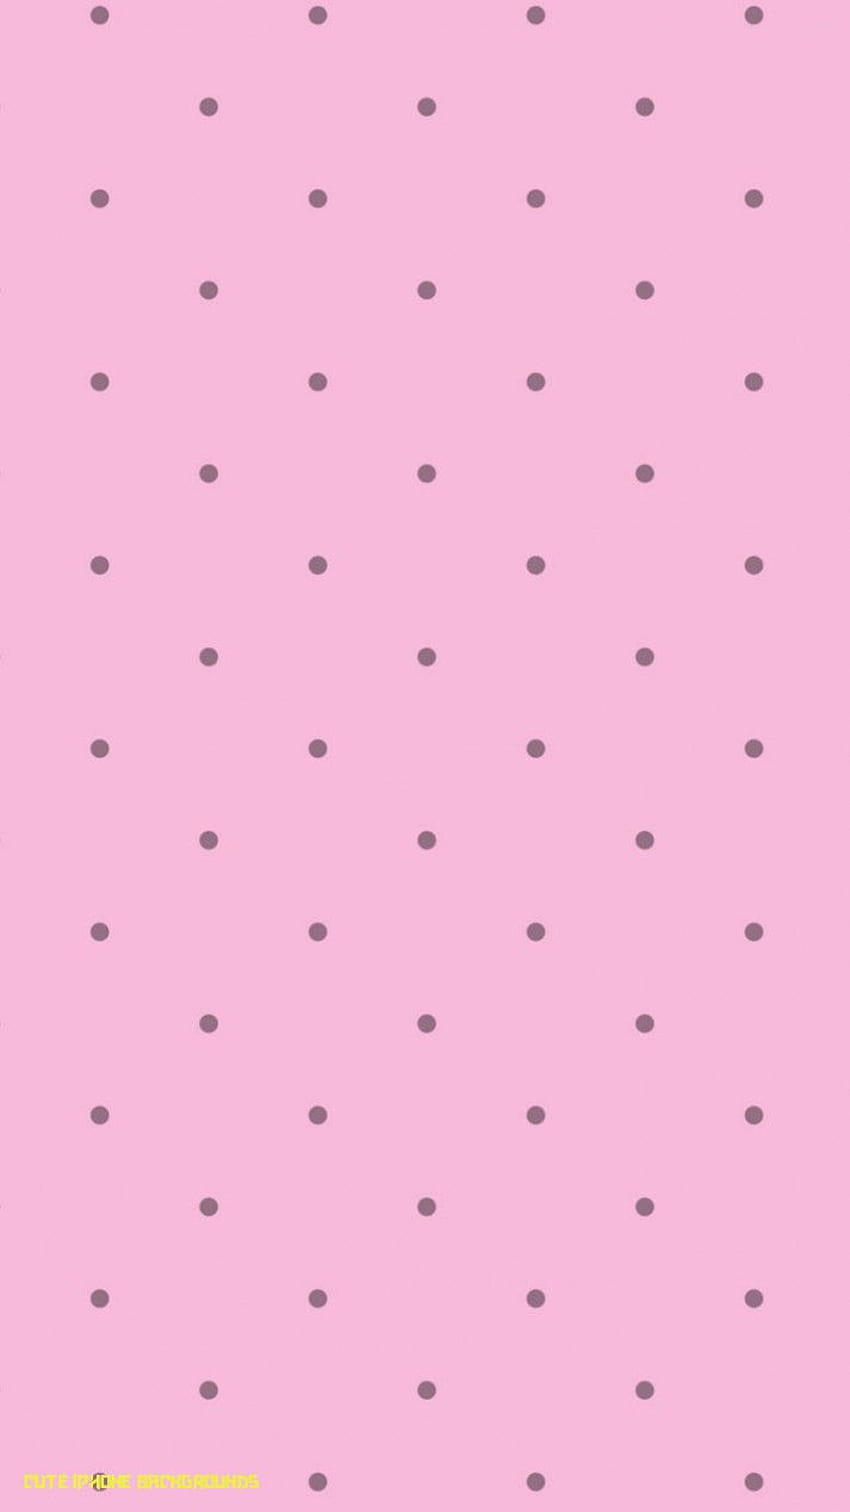 Hình nền iPhone hồng đáng yêu (Pretty Pink iPhone 7 Plus): Tô điểm cho chiếc iPhone của bạn với hình nền hồng đáng yêu và xinh xắn. Tông màu hồng chủ đạo mang đến sự ngọt ngào và thư giãn trong hình ảnh của bạn. Trải nghiệm lựa chọn độc đáo và đáng yêu này trên chiếc iPhone 7 Plus của bạn ngay hôm nay.